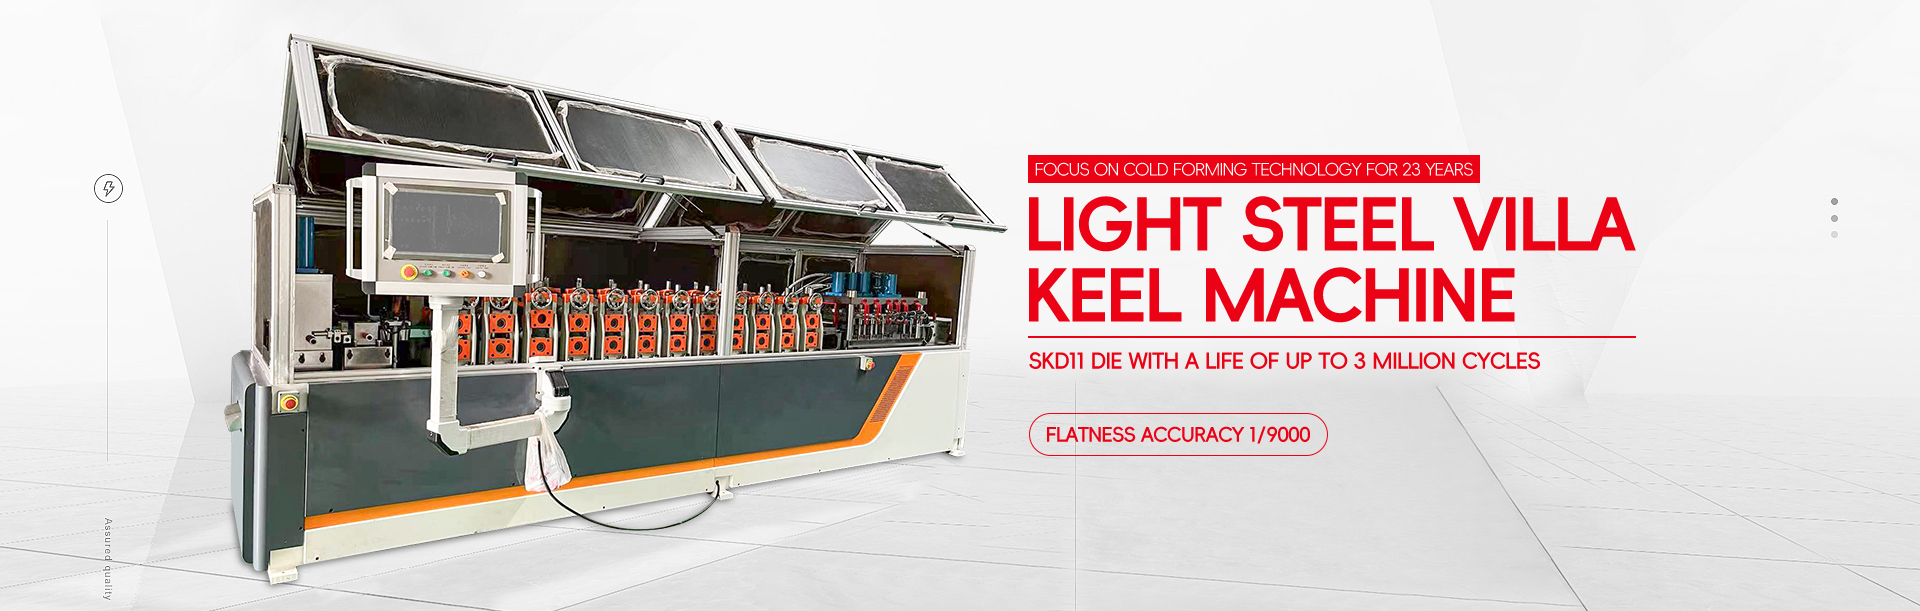 Light steel villa keel equipment